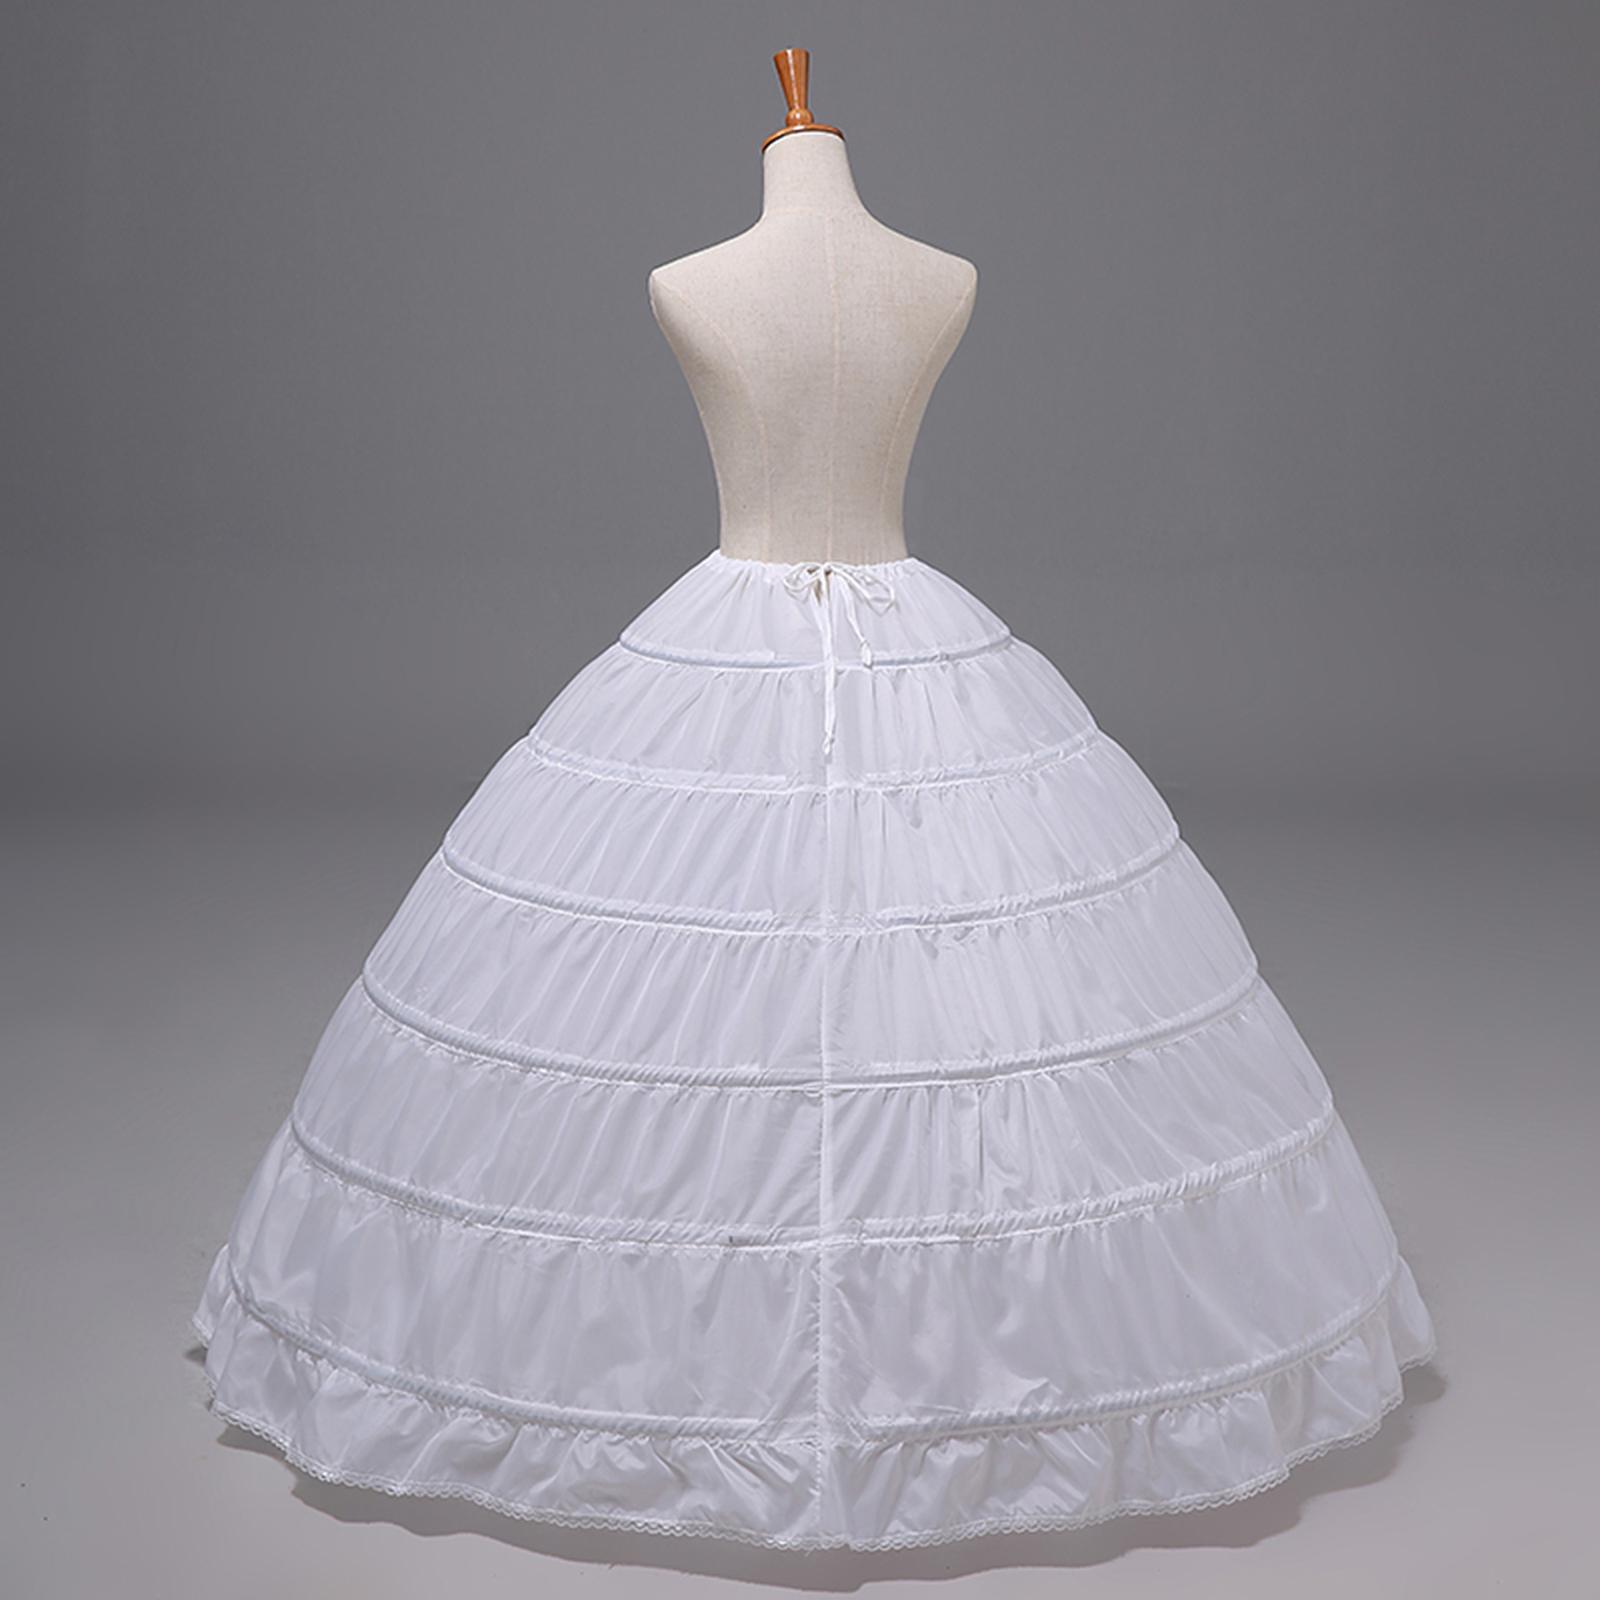 Vintage White Long 6 Hoops Petticoat Extra Full Wedding Ball Gown Crinoline Skirt